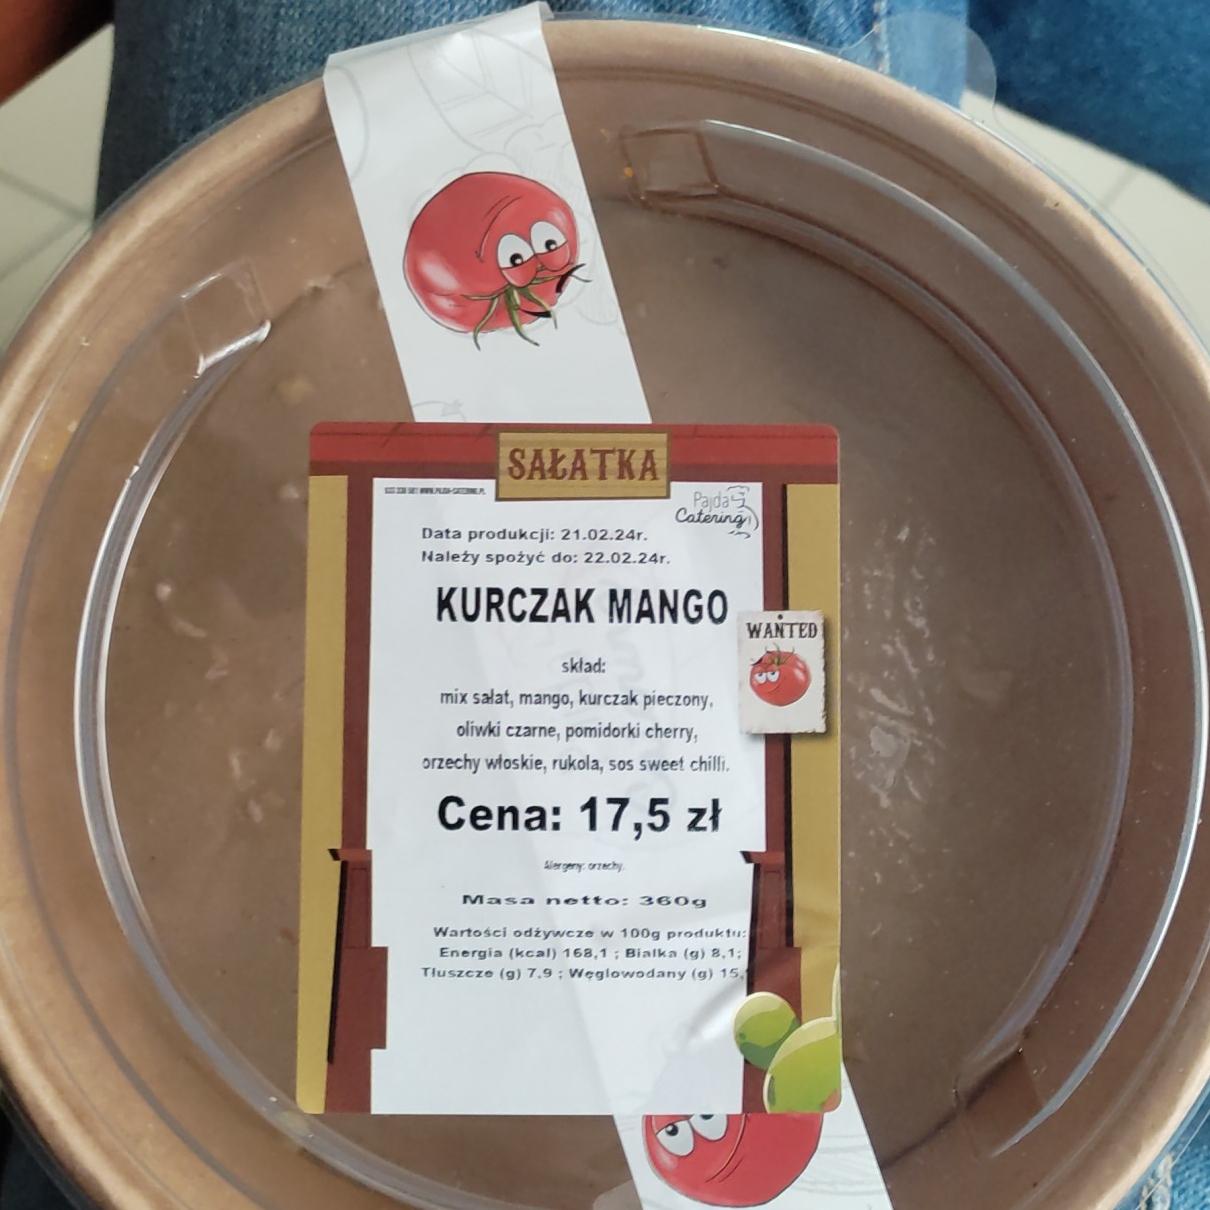 Zdjęcia - Sałatka kurczak mango Pajda catering